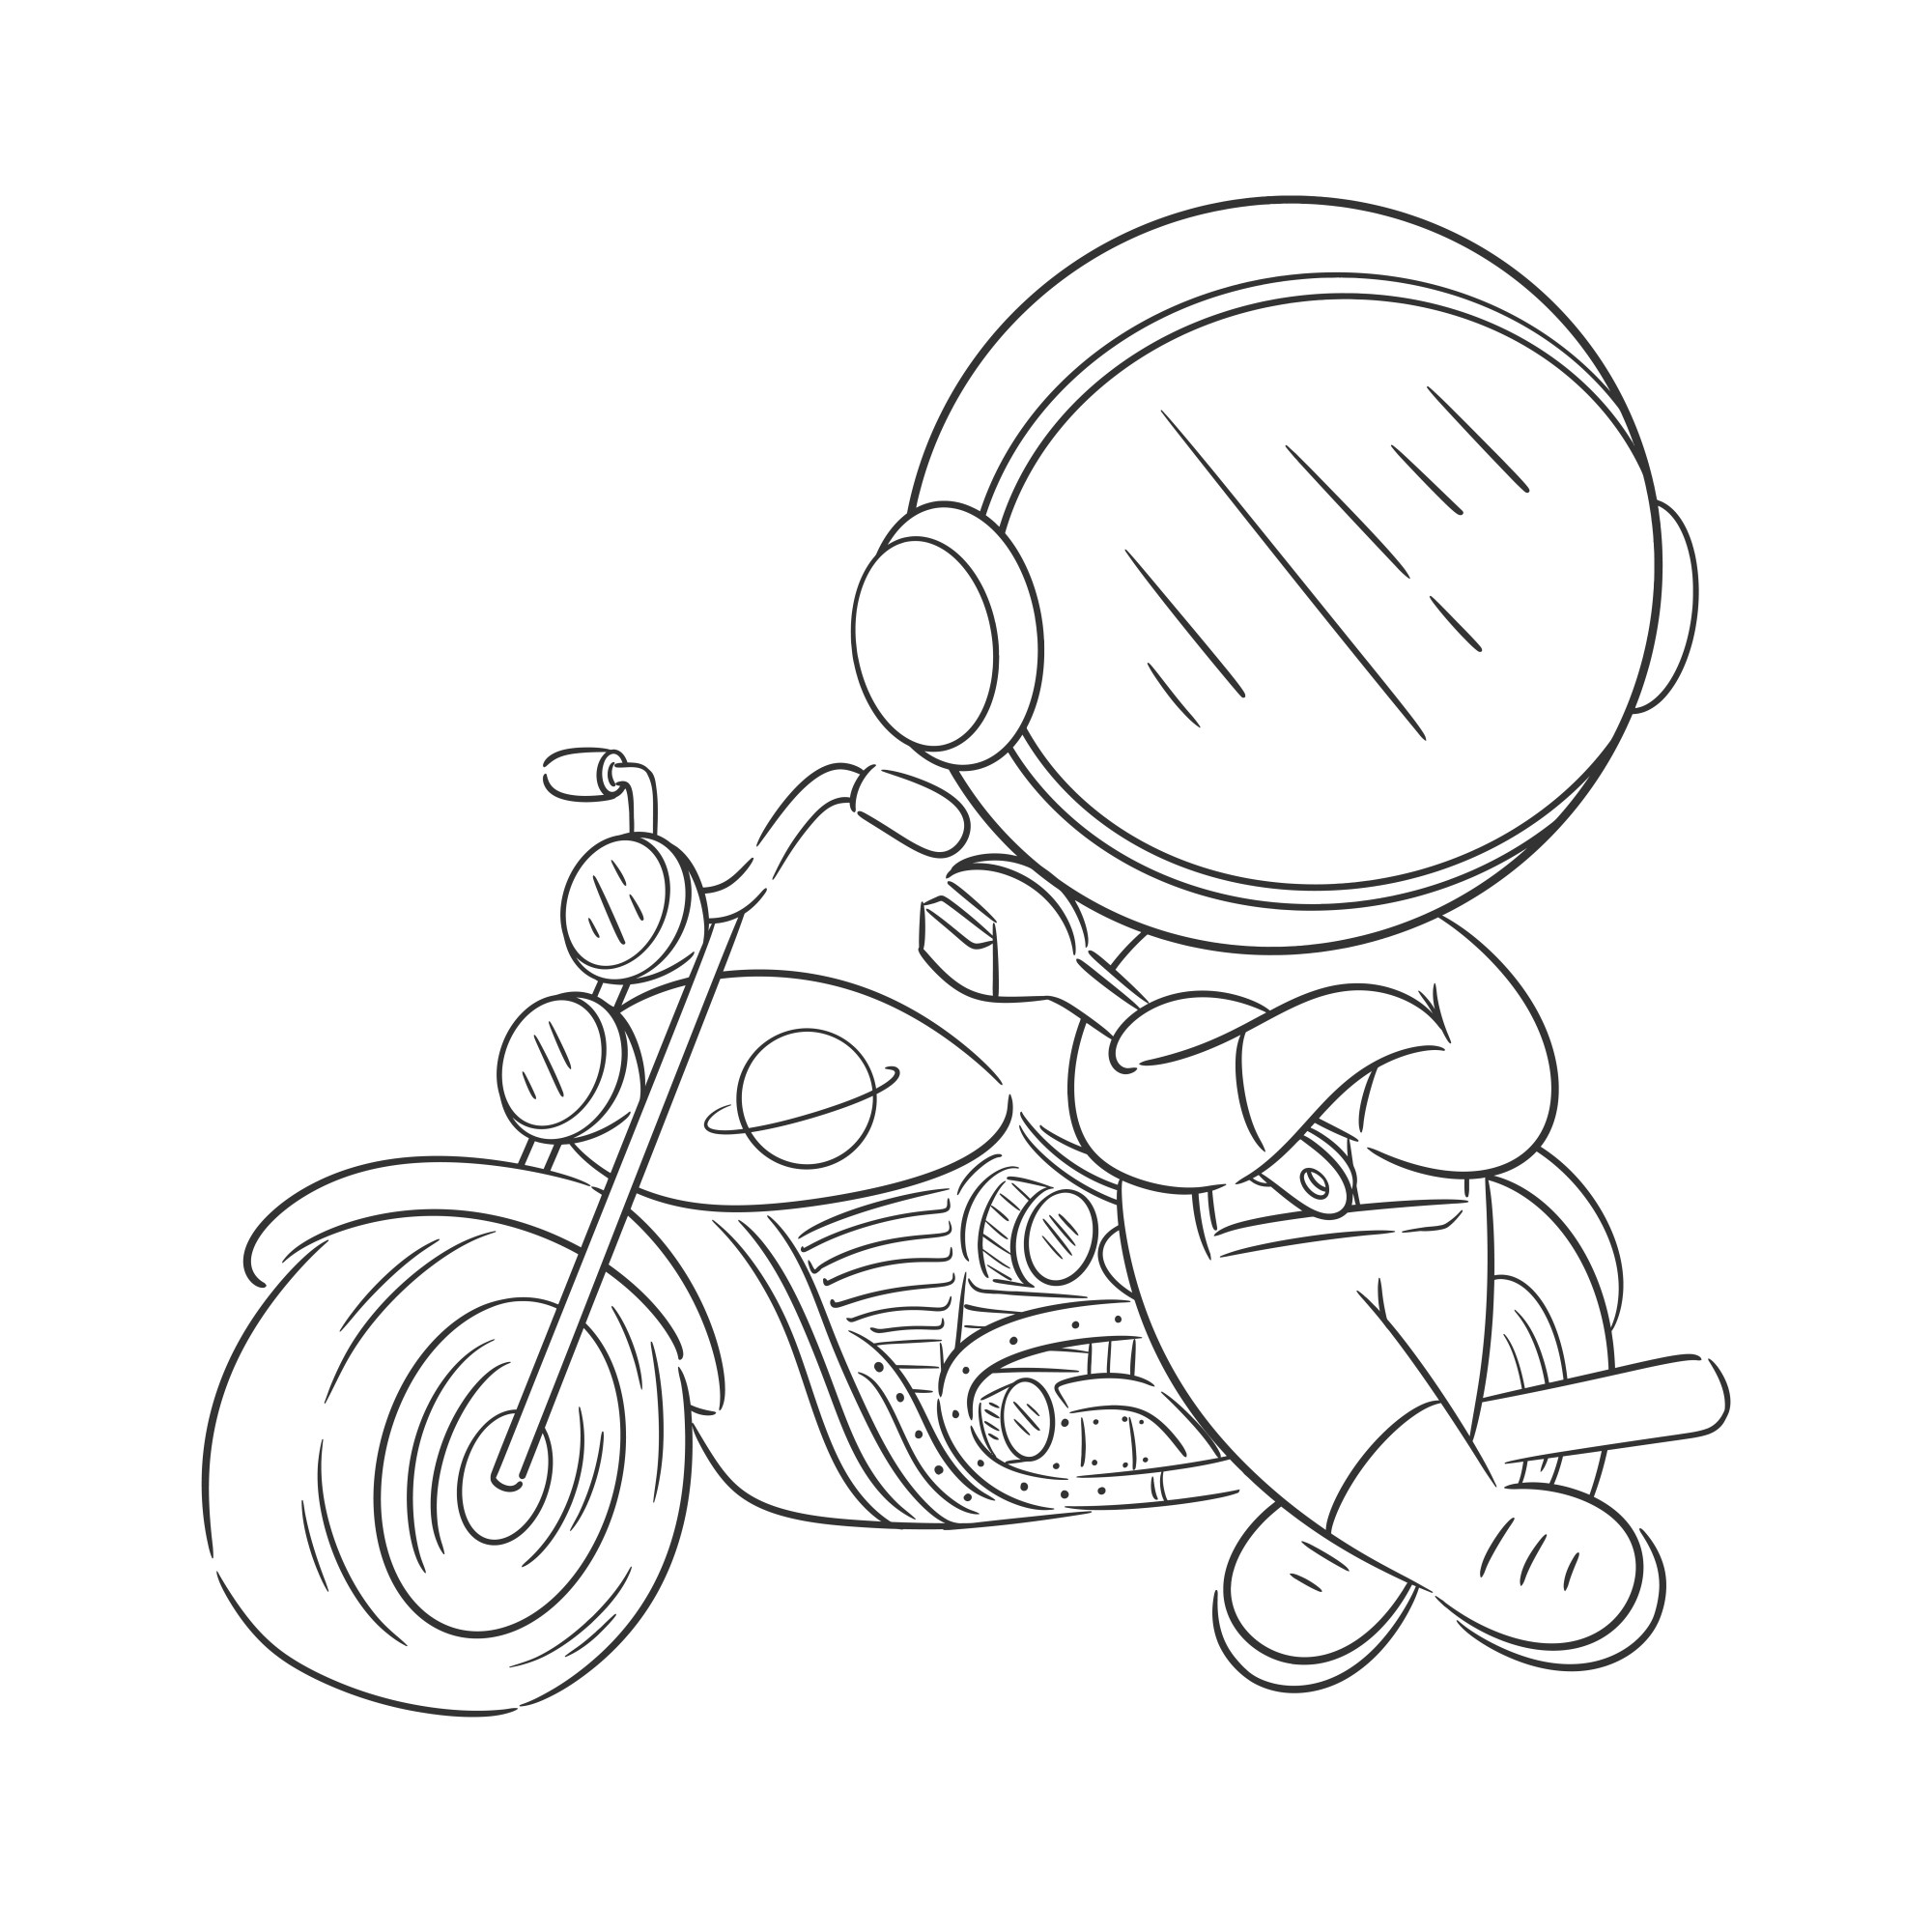 Раскраска для детей: байкер в шлеме с мотоциклом